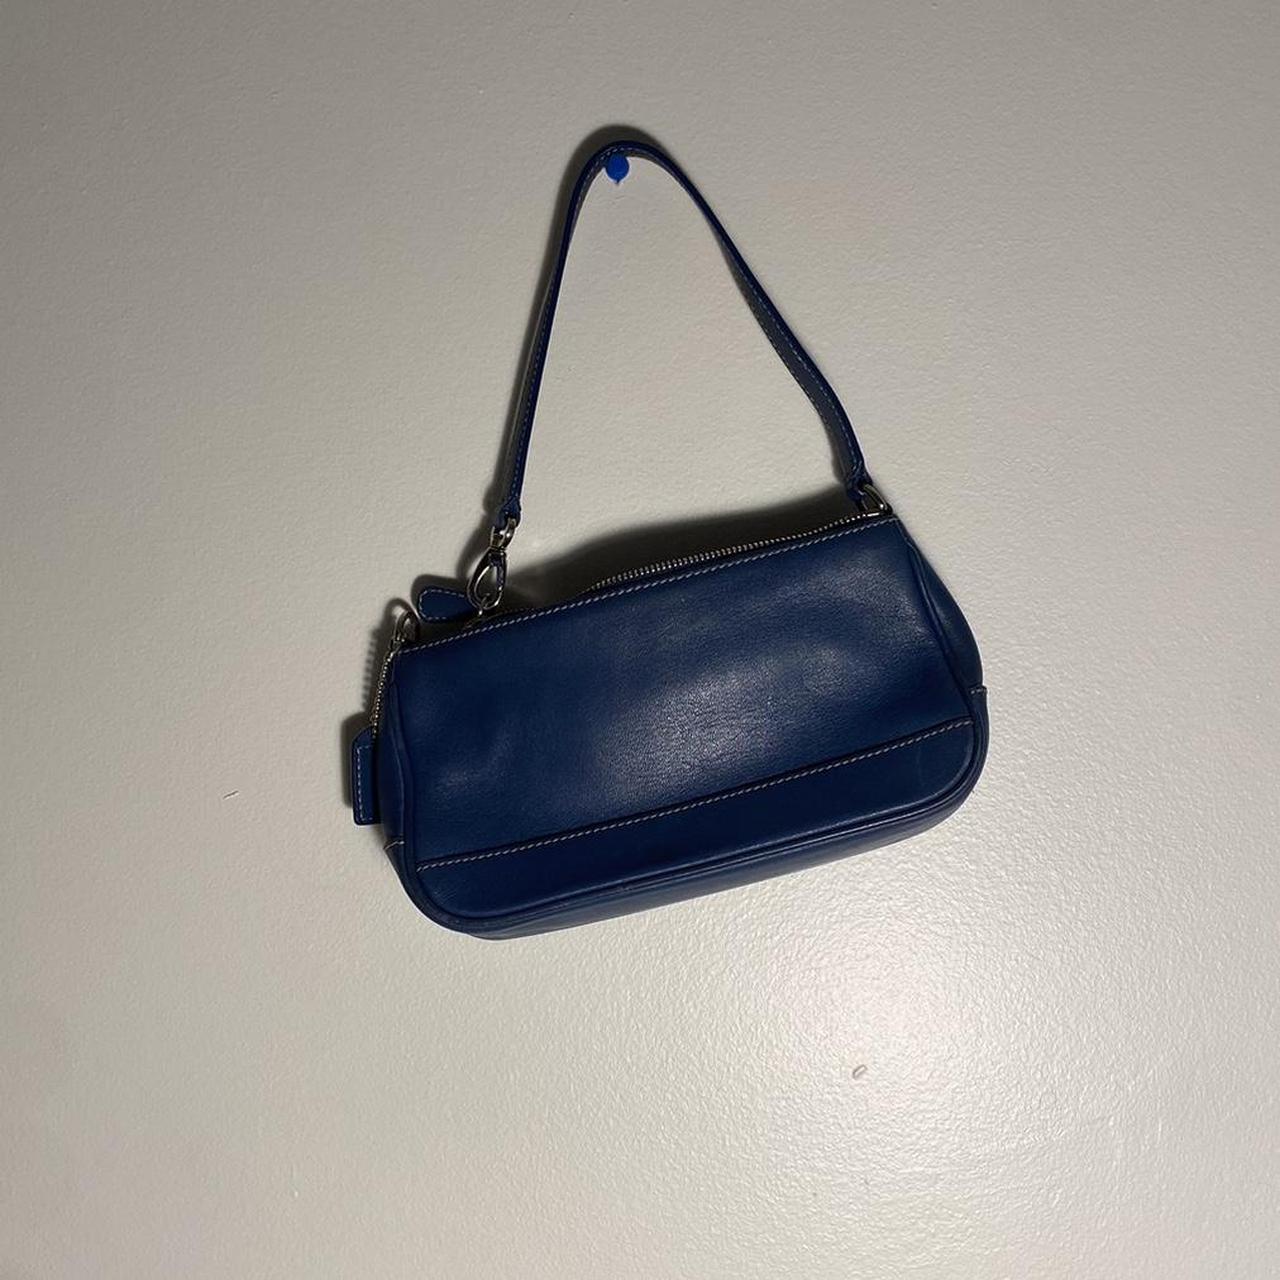 Coach Blue Leather Shoulder Bag (Tote) | eBay